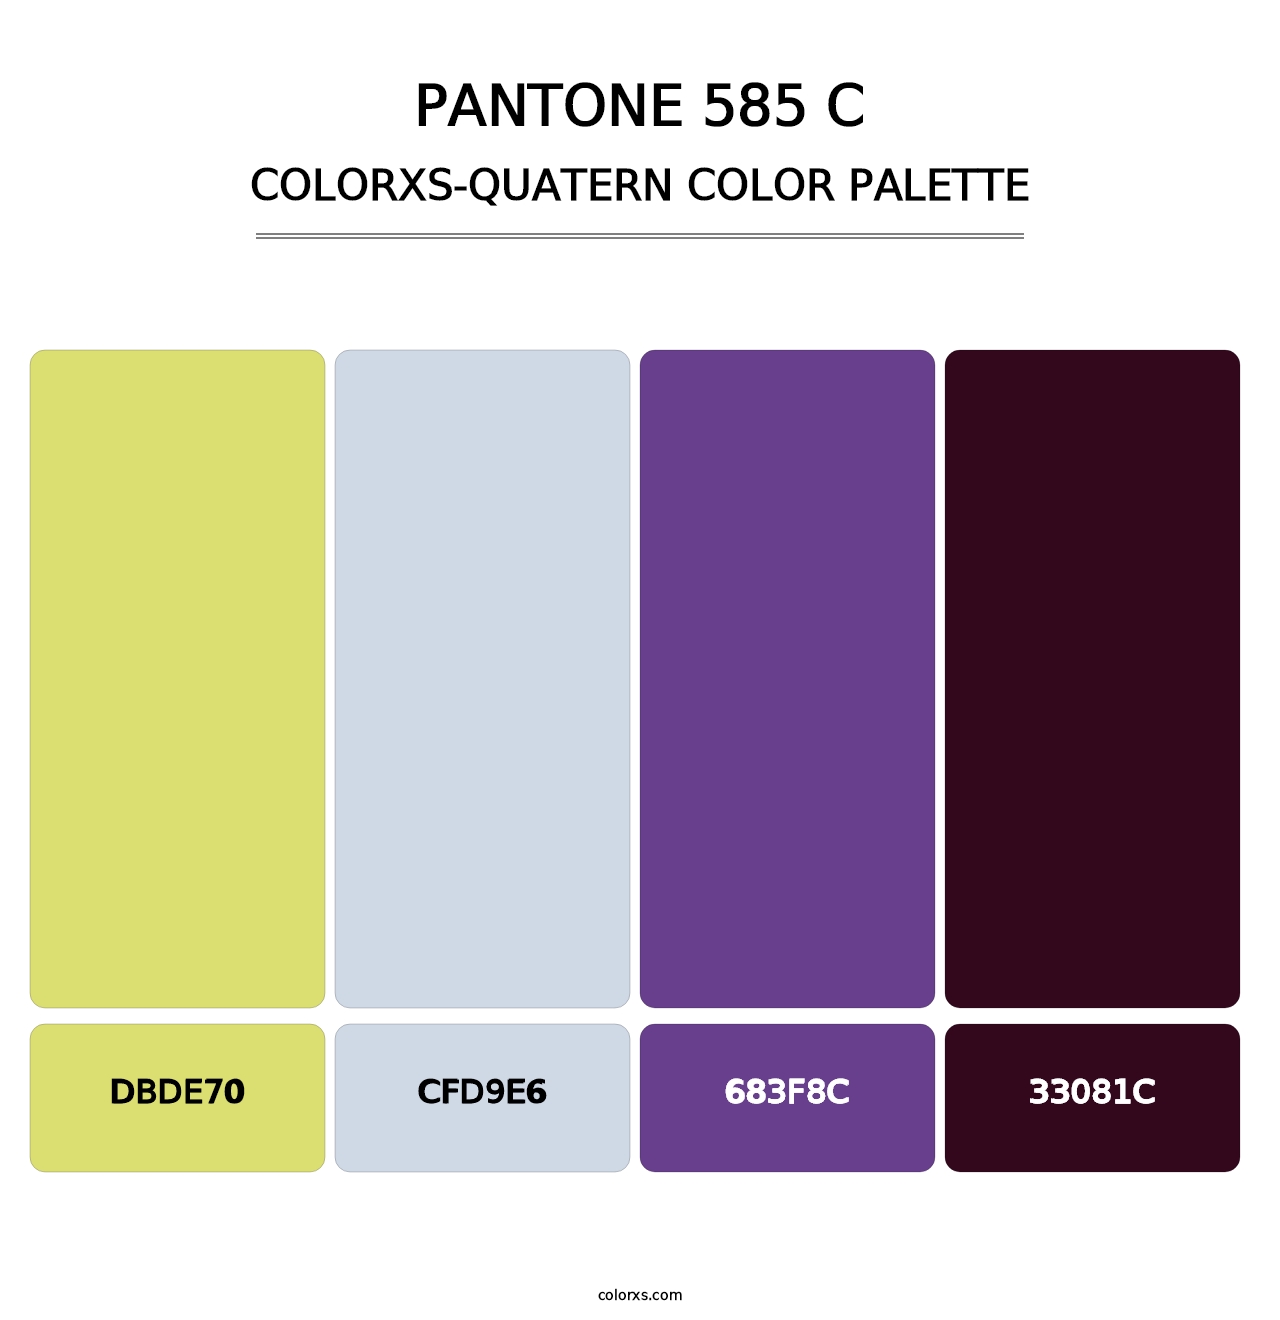 PANTONE 585 C - Colorxs Quatern Palette